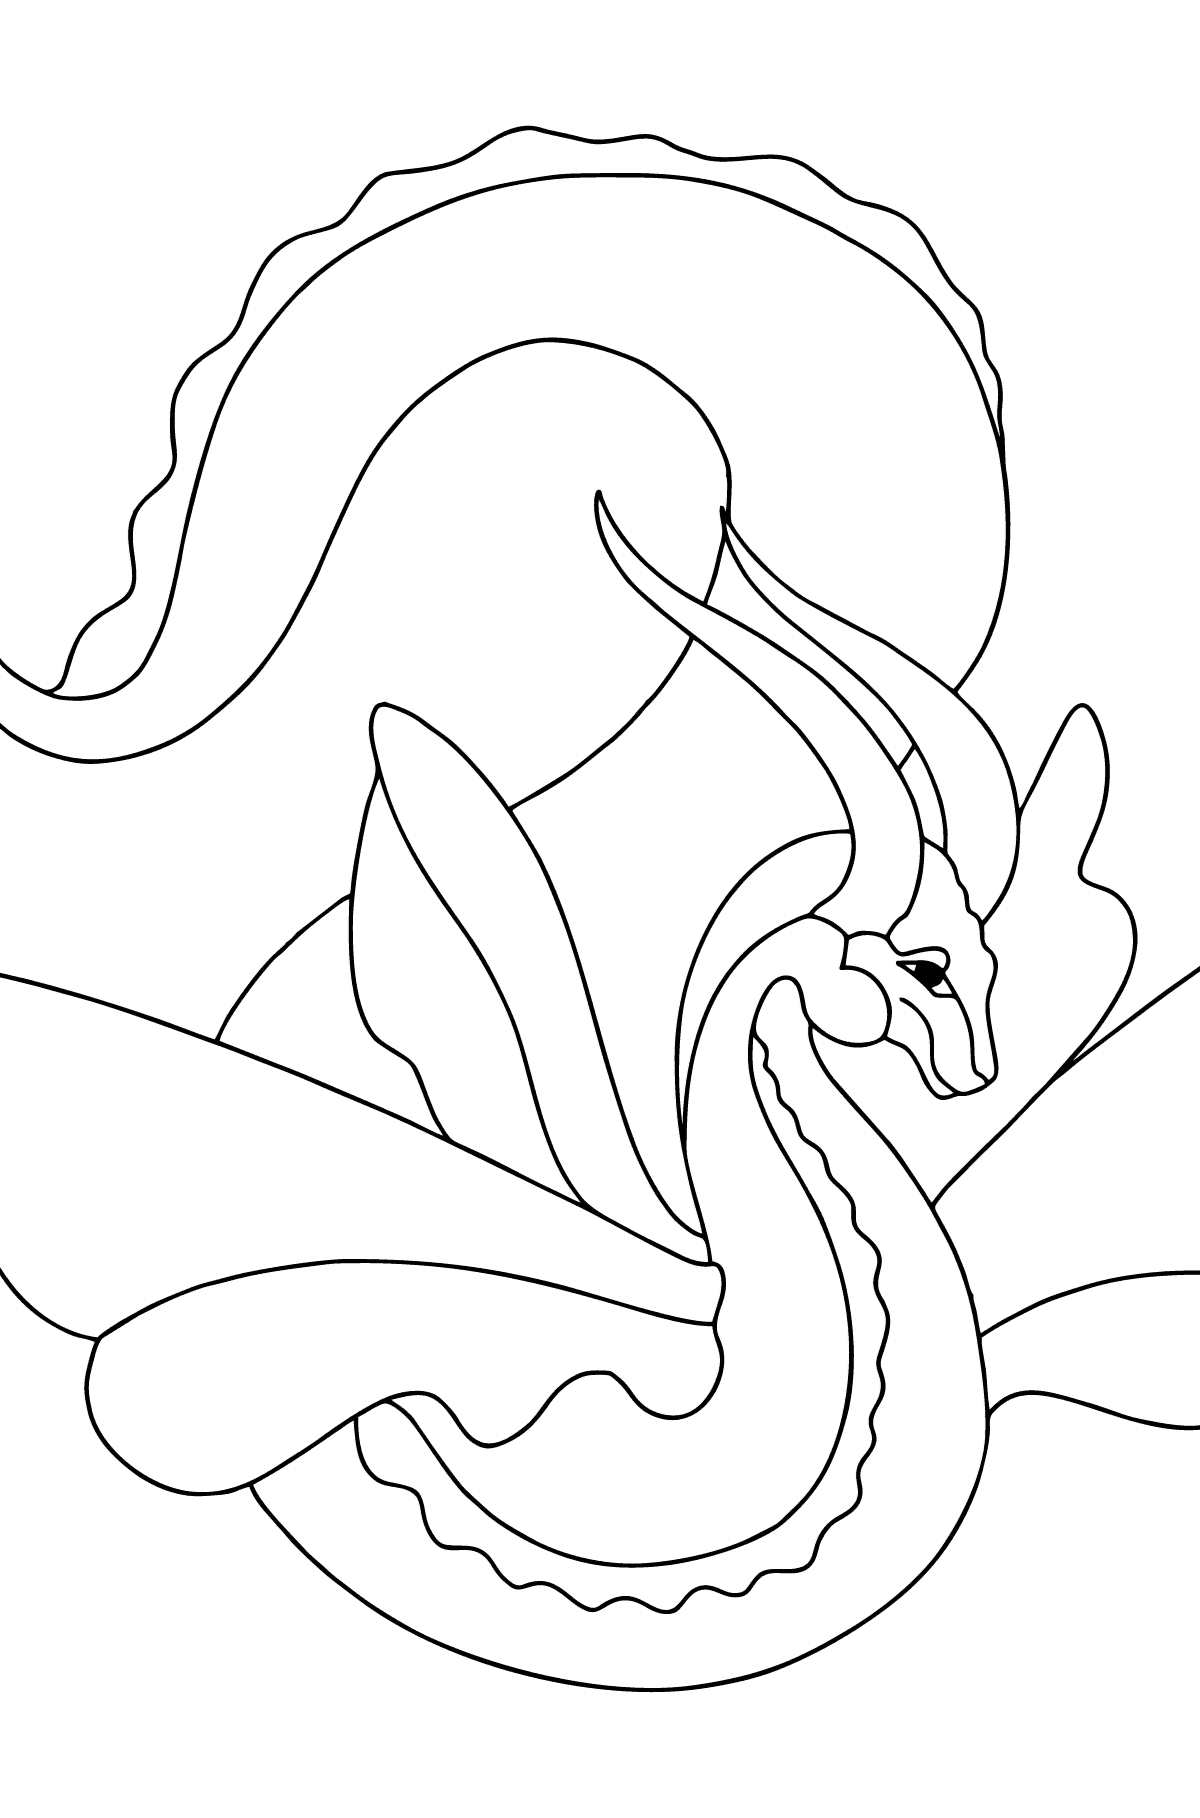 Desen de colorat dragon dragut (simplu) - Desene de colorat pentru copii